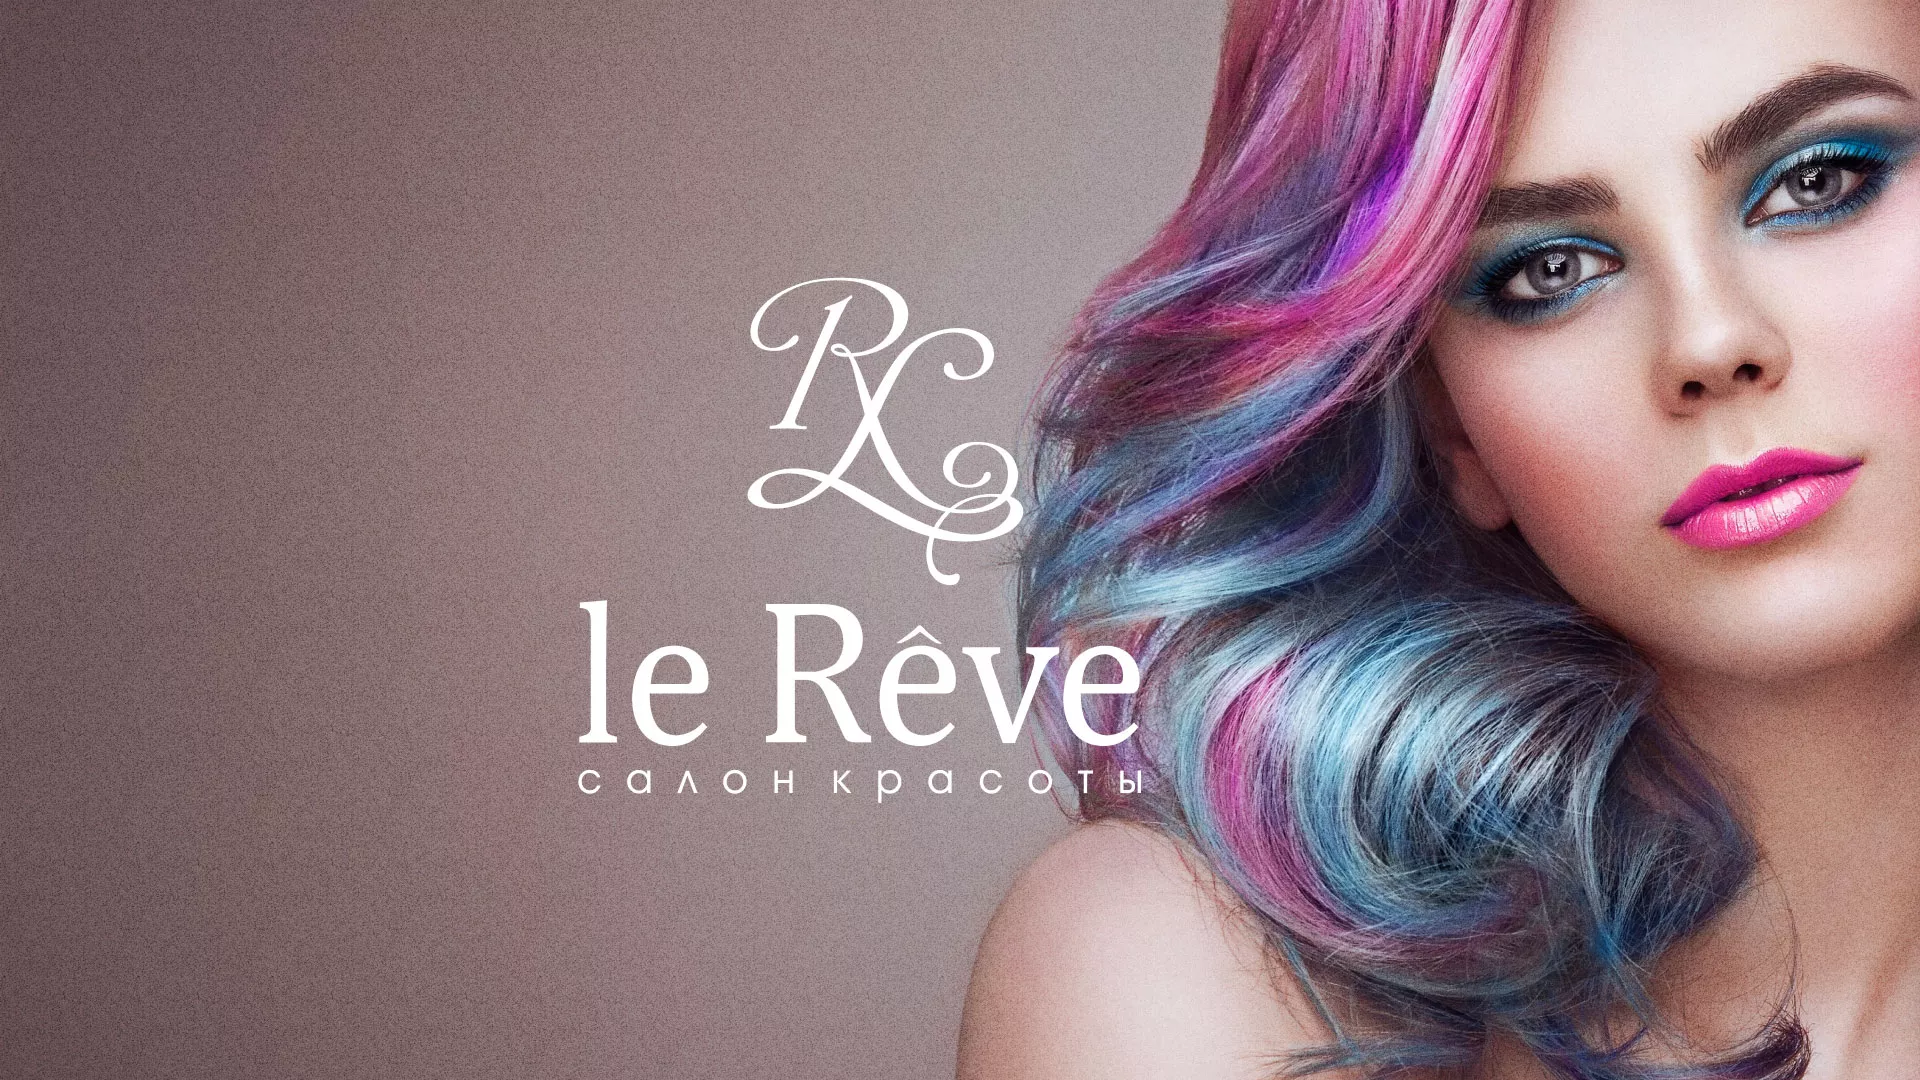 Создание сайта для салона красоты «Le Reve» в Каменке